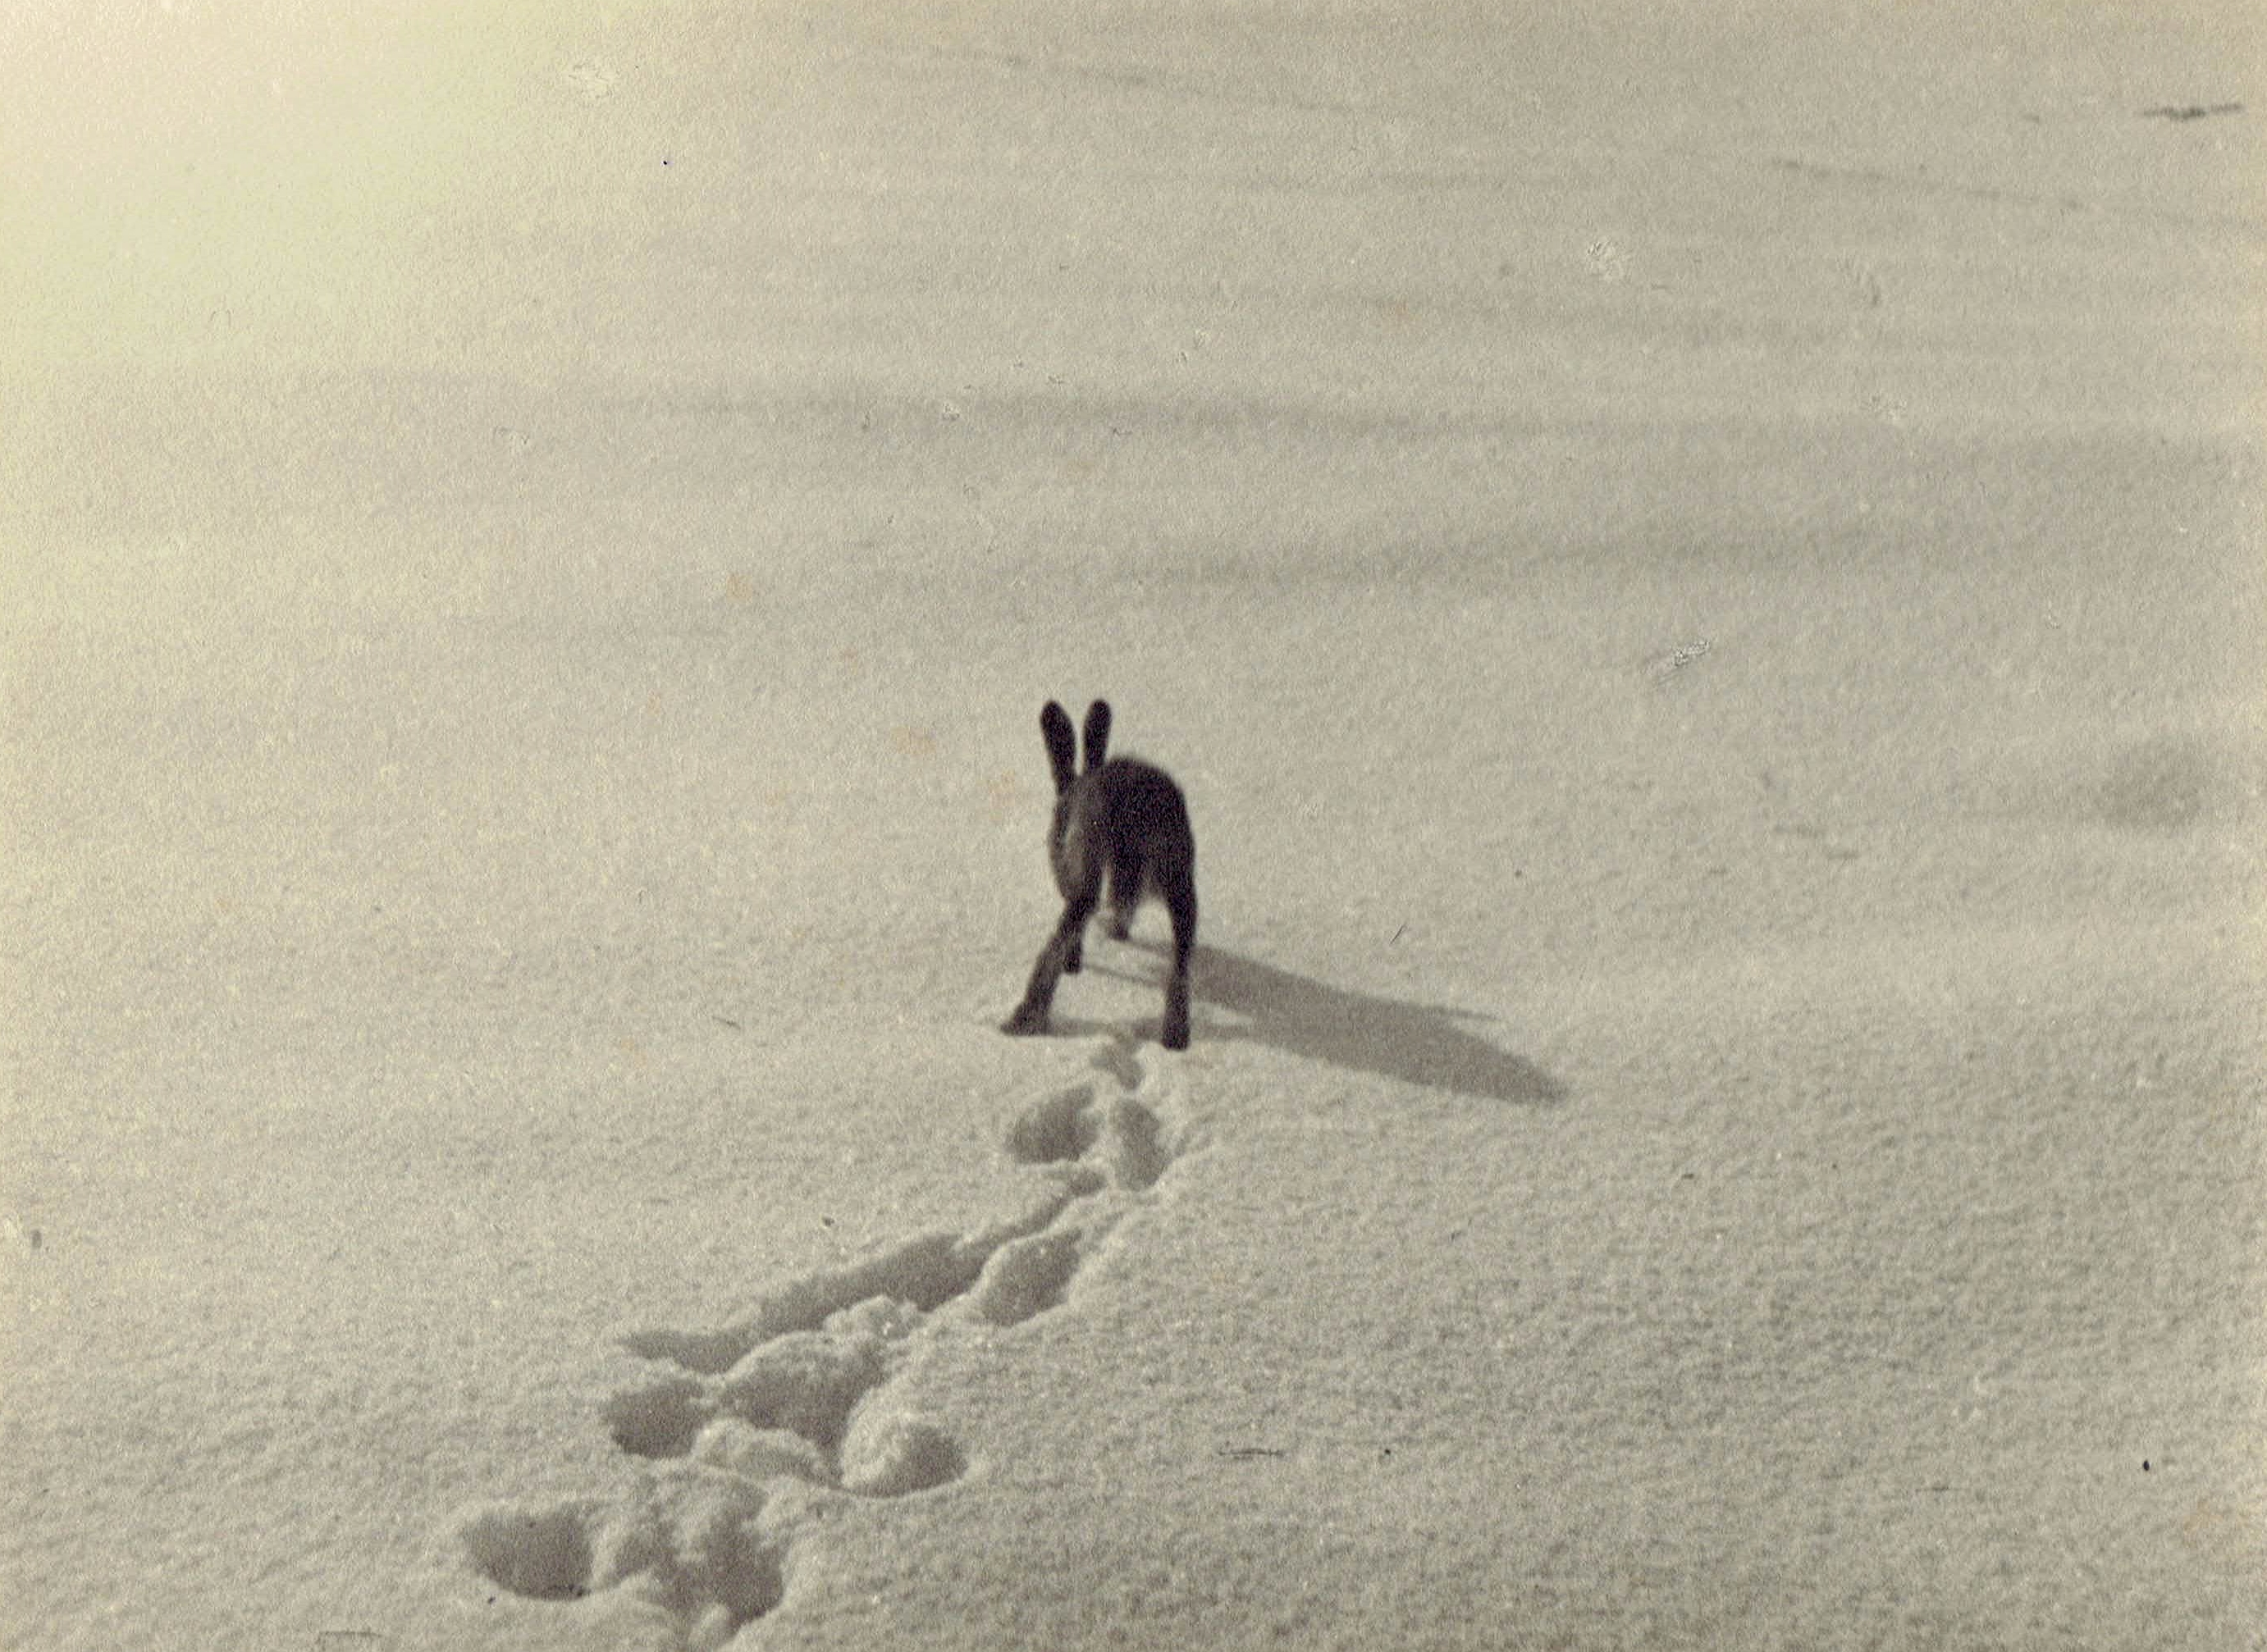 czarnobiała fotografia zająca kicającego po śniegu